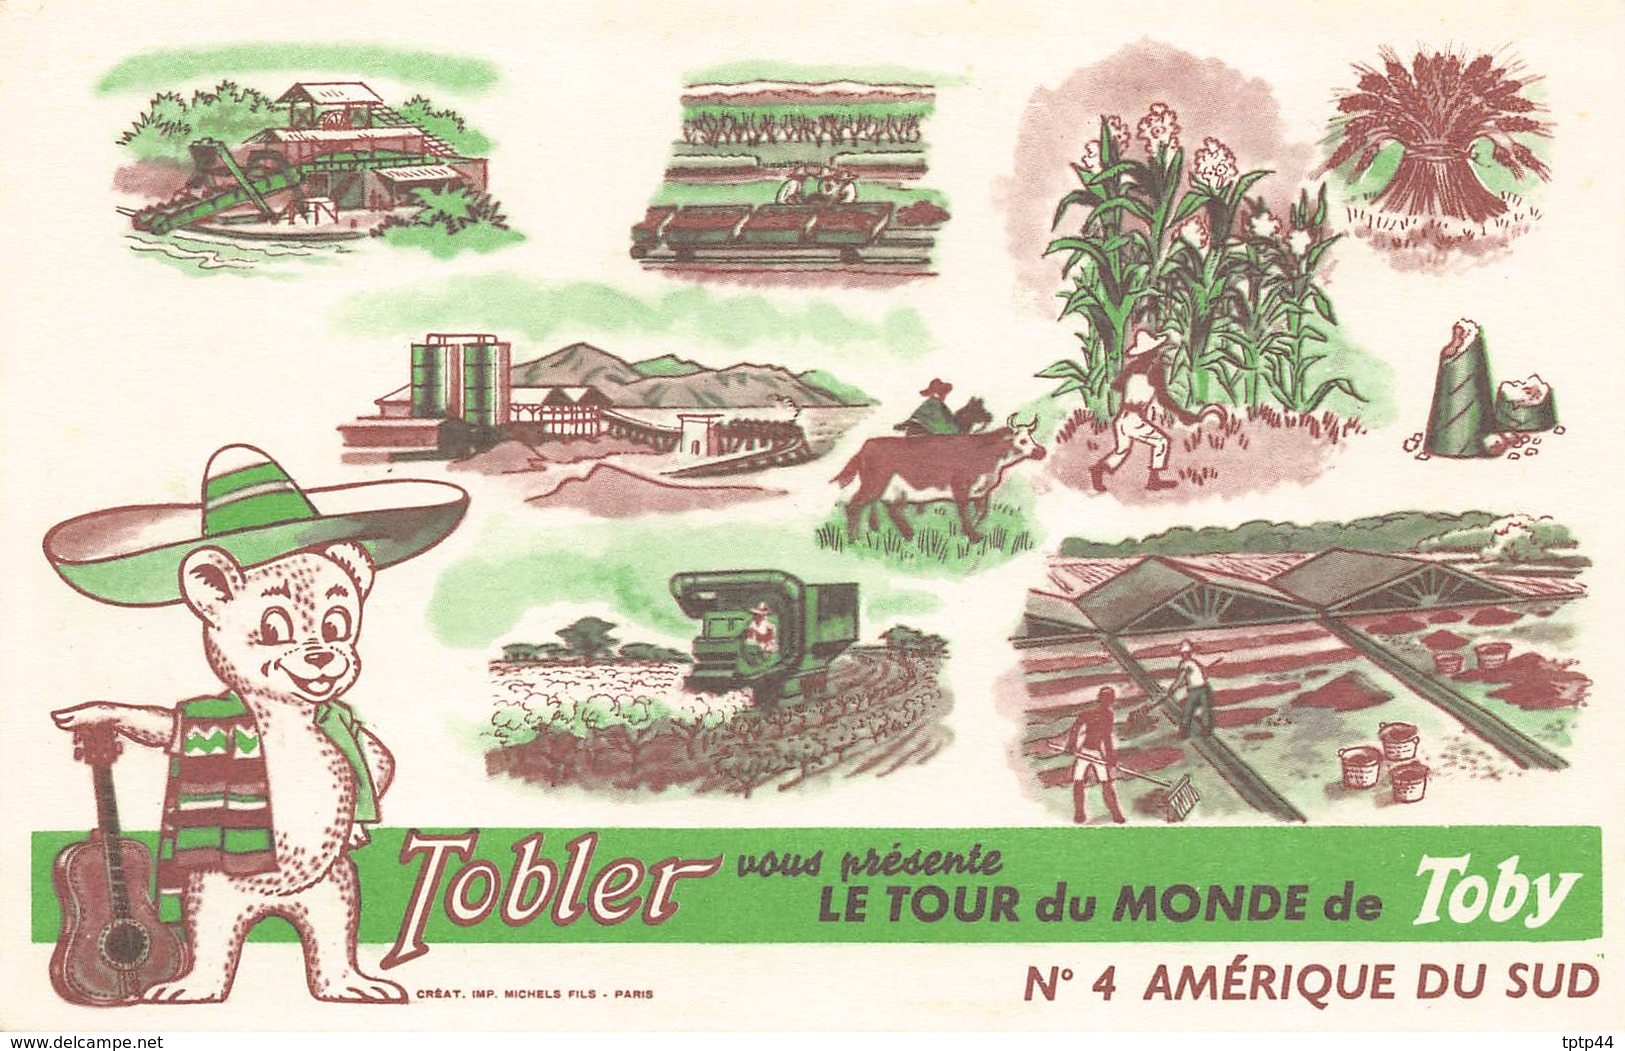 Lot de 10 Cartes Publicité du Chocolat TOBLER - Le Tour du Monde de TOBY